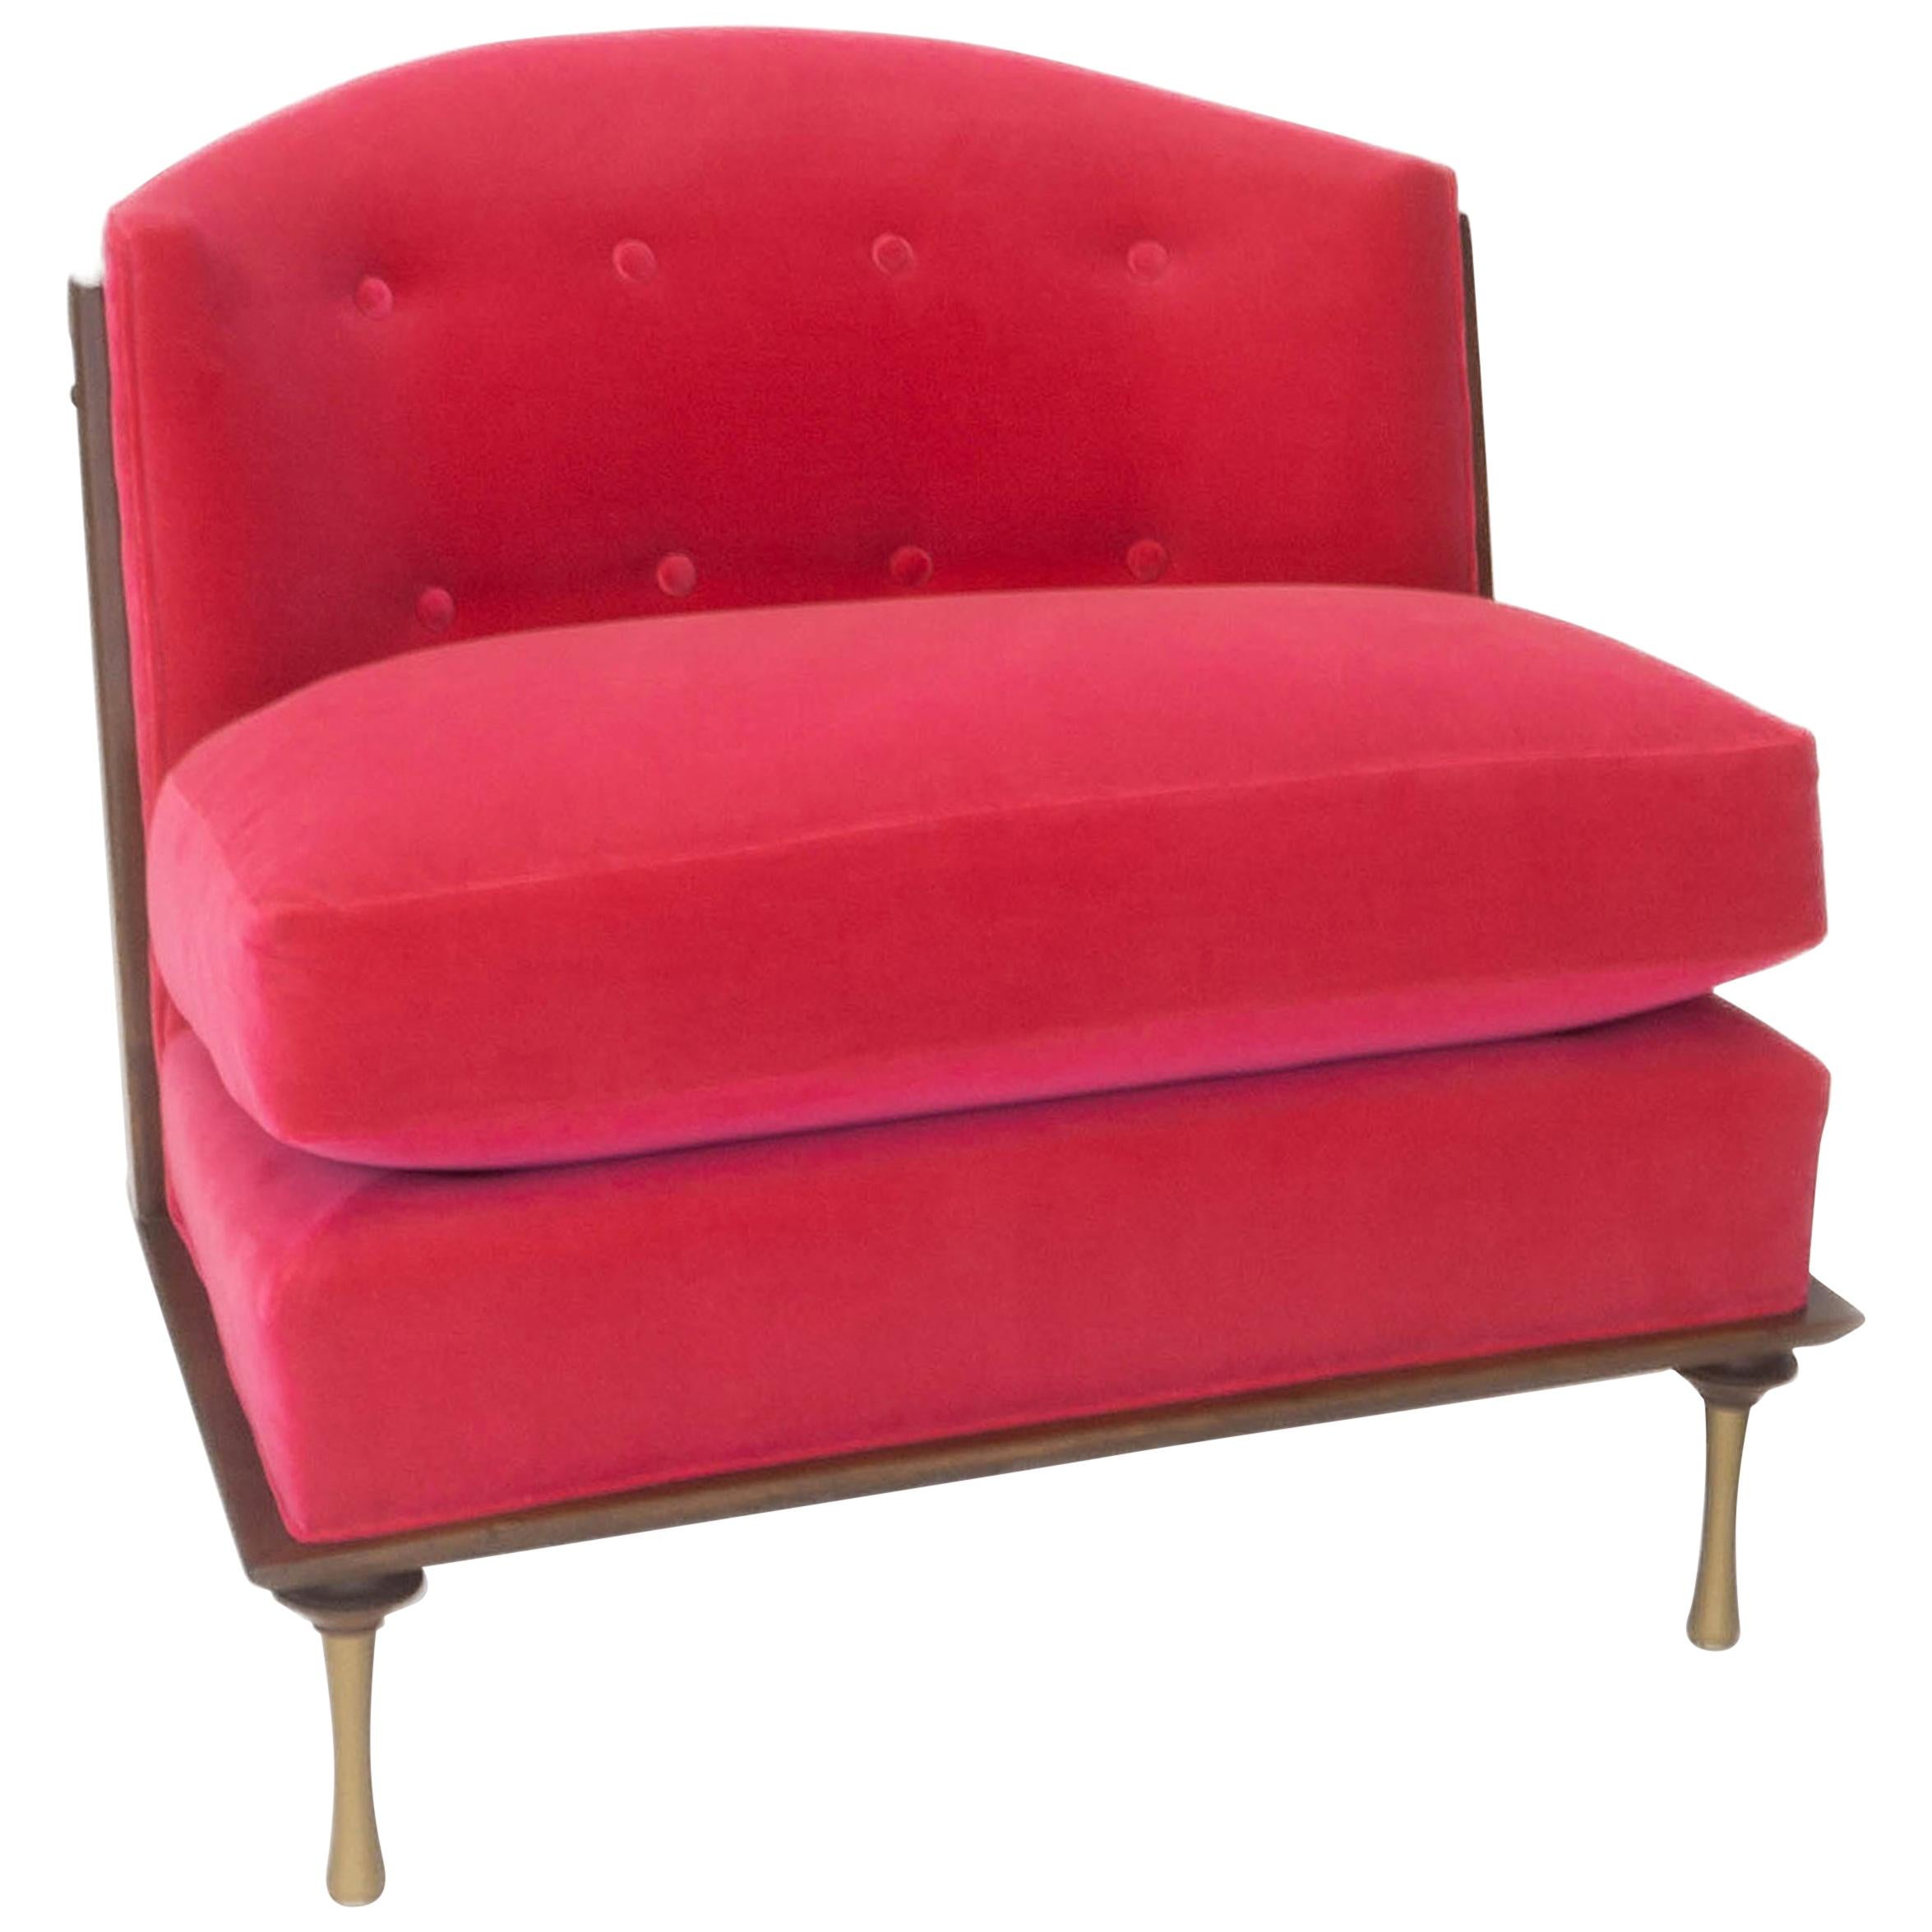 Art Deco Inspired Slipper Chair